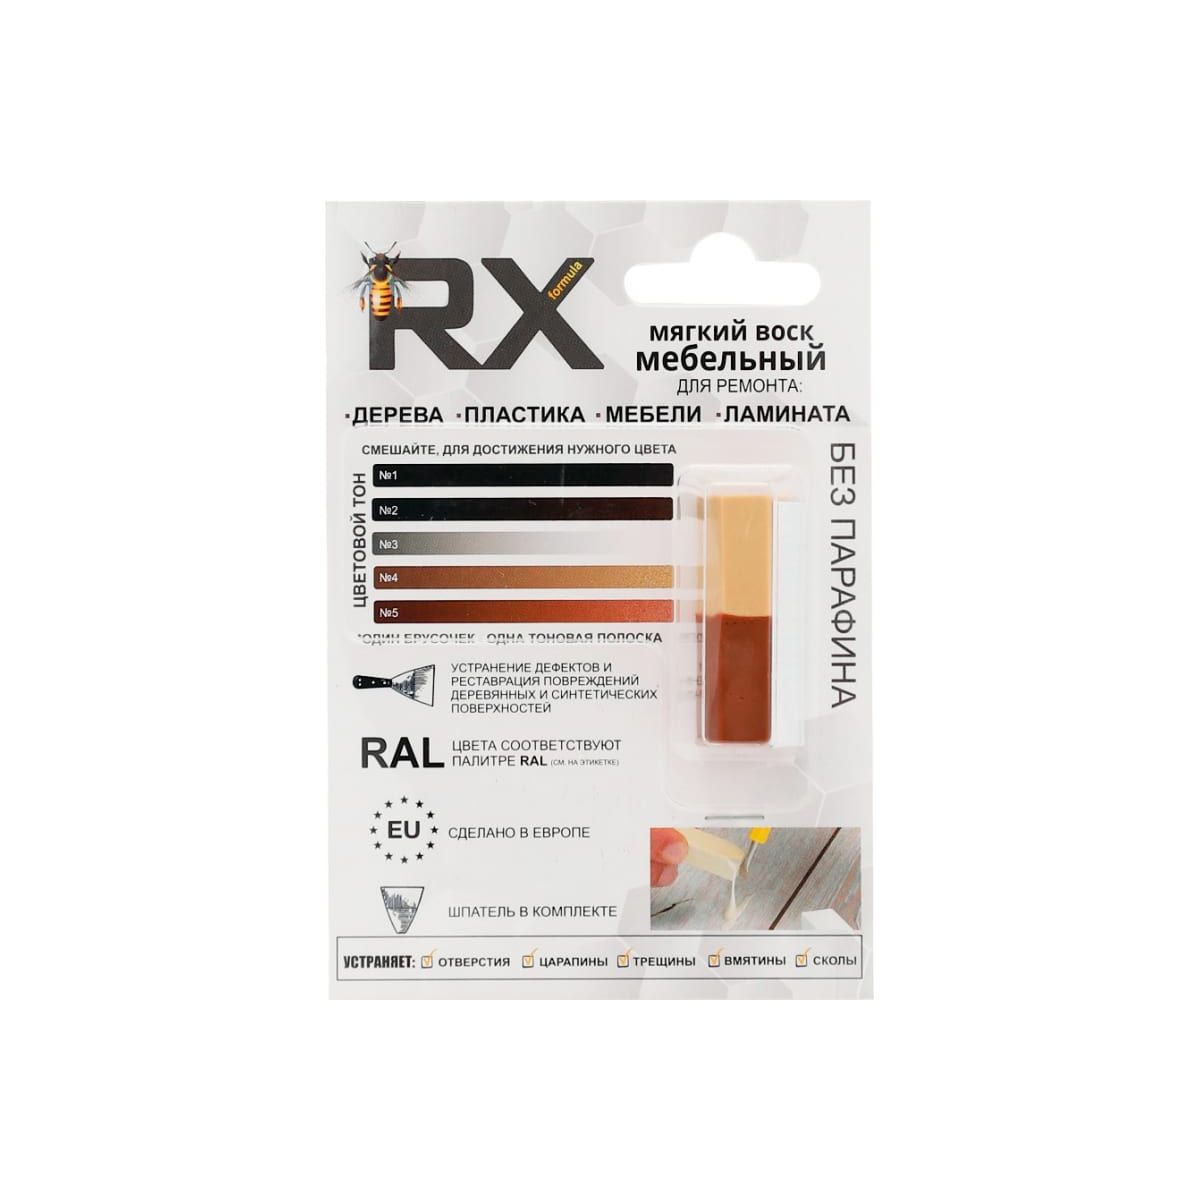 Воск мебельный RX Formula Медно-коричневый RAL 8004 + Бежево-красный RAL 3012 15 г воск мебельный rx formula ral9005 махагон ral8016 15 г